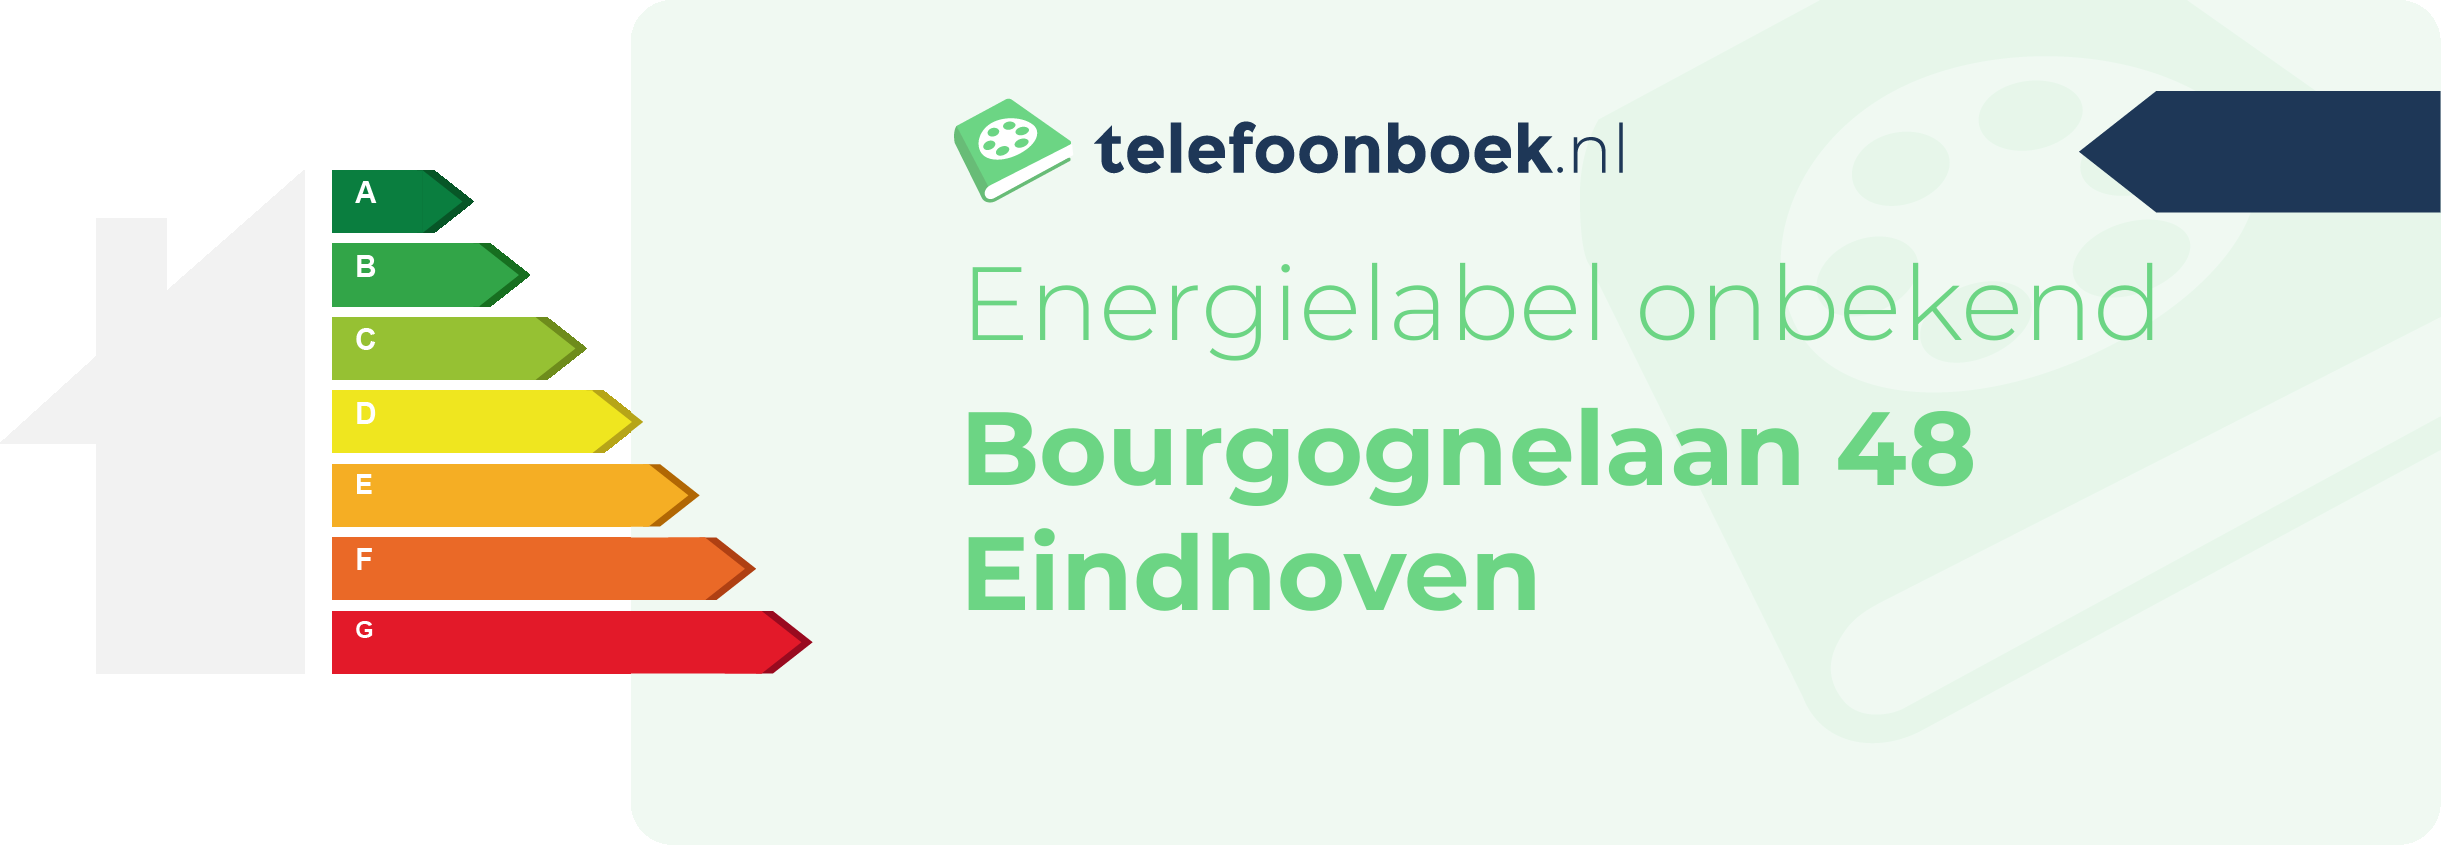 Energielabel Bourgognelaan 48 Eindhoven